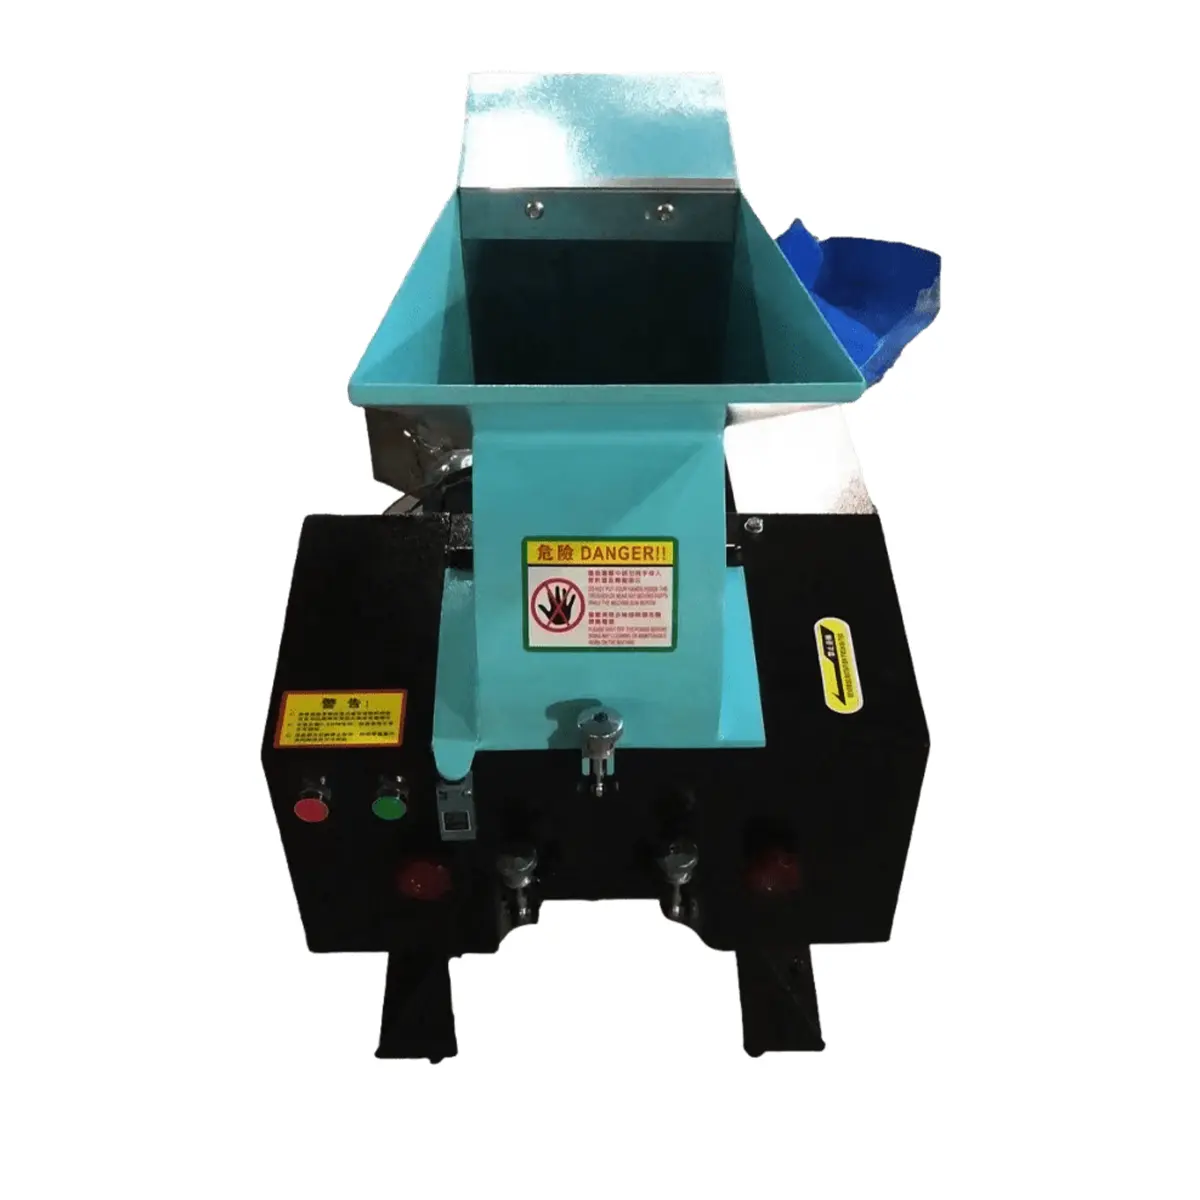 OUNAISI Máquina trituradora multifuncional para bico de pato, sucata de garrafas plásticas, fácil de operar e de boa qualidade